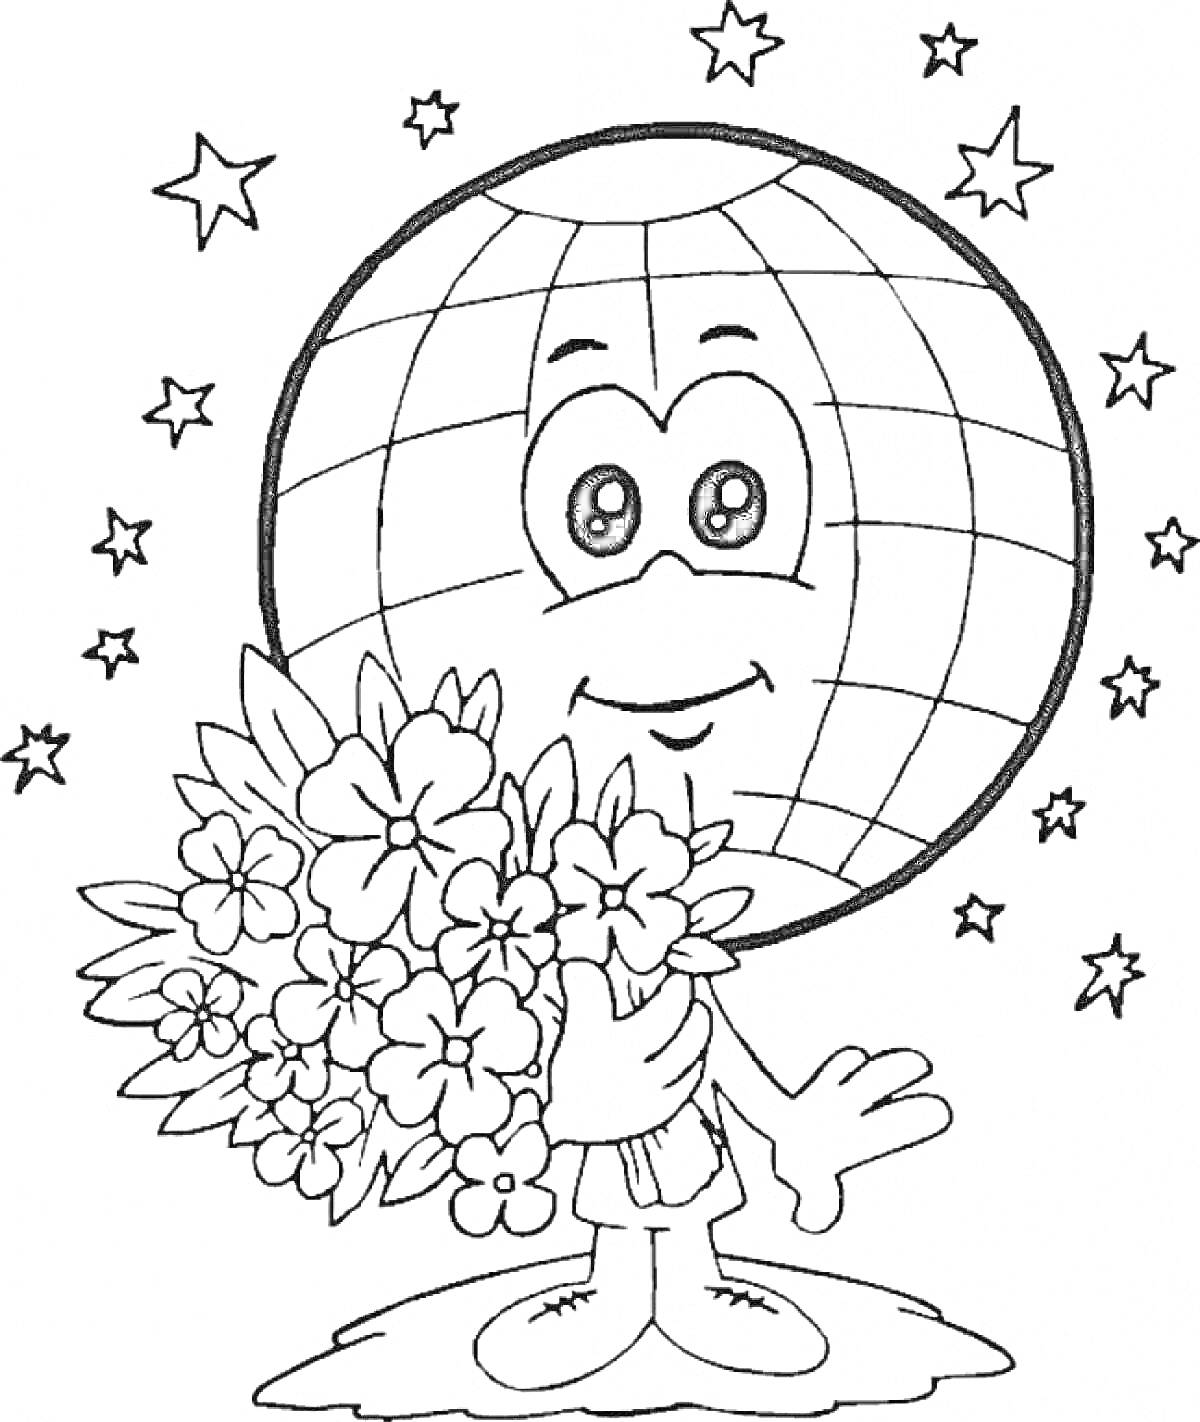 Раскраска Земной шар с букетом цветов среди звезд